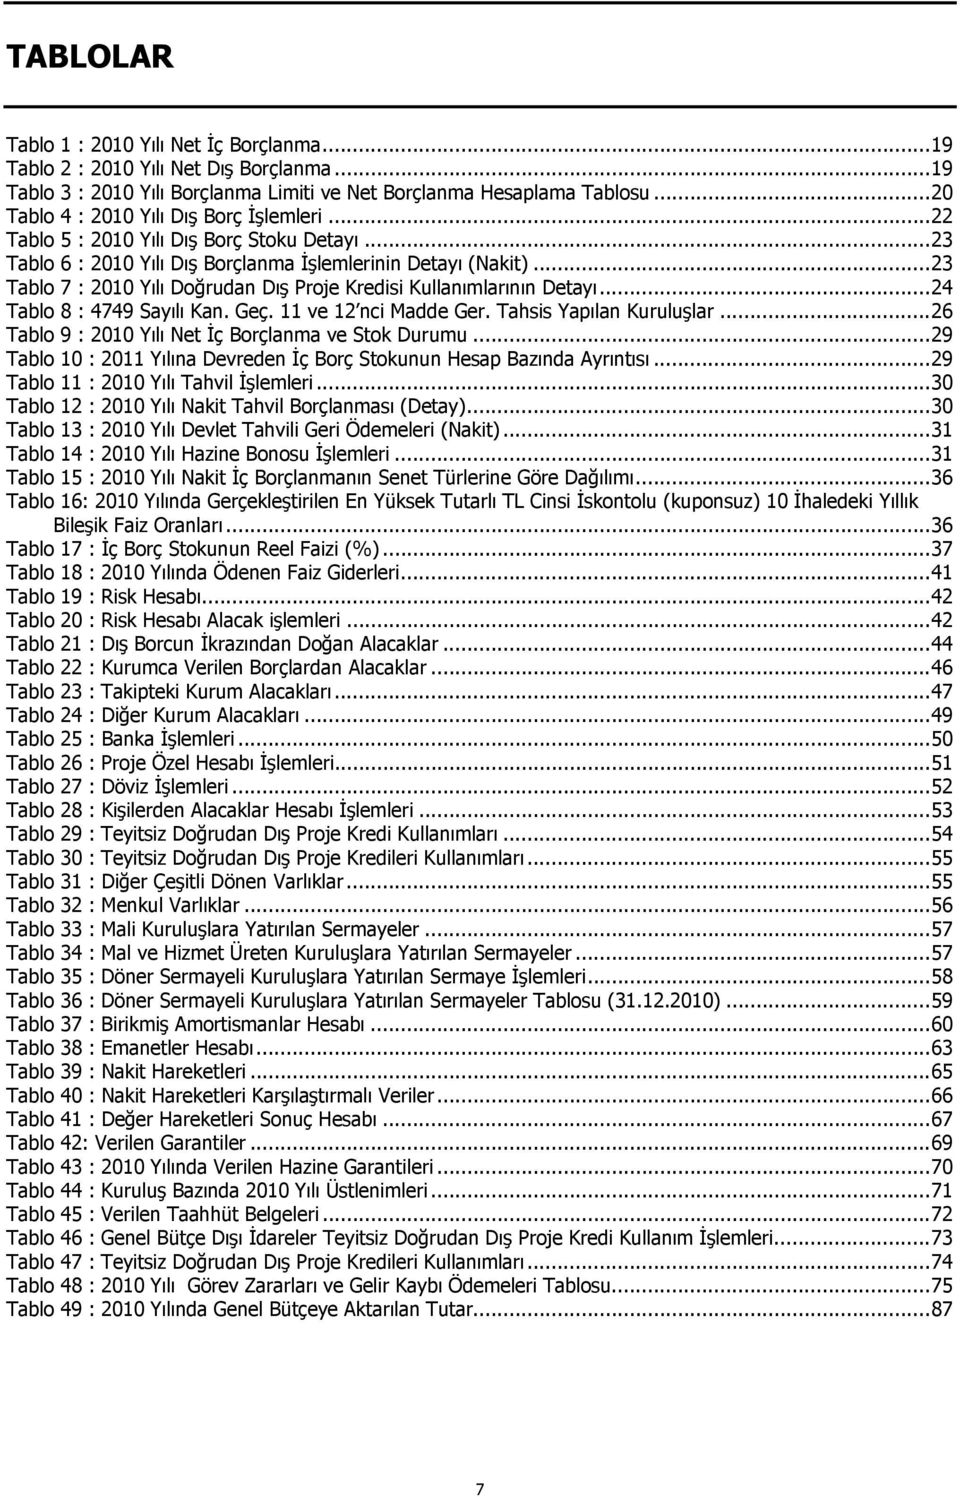 .. 23 Tablo 7 : 2010 Yılı Doğrudan Dış Proje Kredisi Kullanımlarının Detayı... 24 Tablo 8 : 4749 Sayılı Kan. Geç. 11 ve 12 nci Madde Ger. Tahsis Yapılan Kuruluşlar.